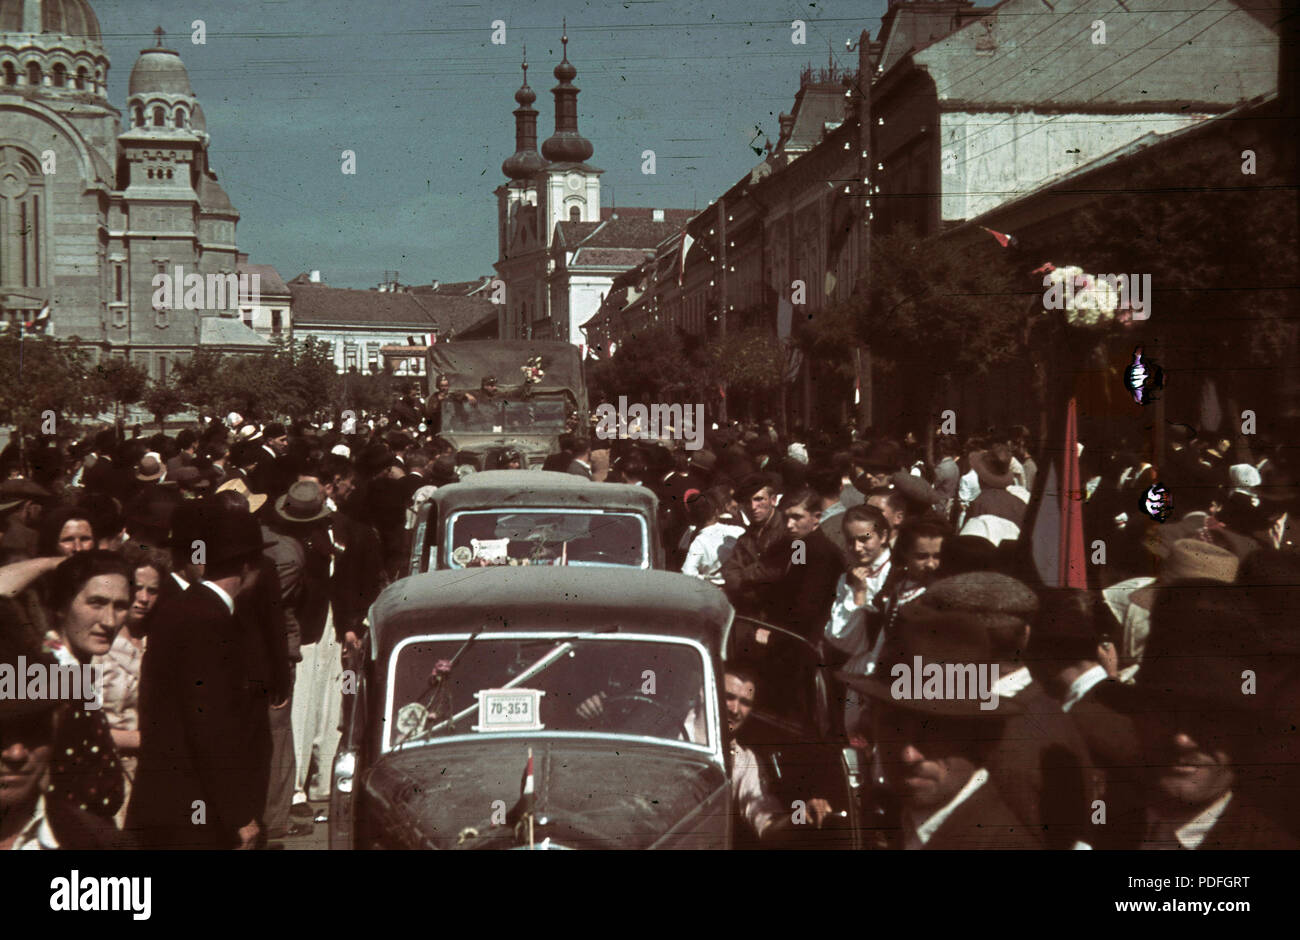 136 Fő tér (Piata Trandafirilor), balra az Ortodox Székesegyház, jobbra a Keresztelő Szent János-templom a magyar csapatok bevonulása idején. A felvétel 1940. szeptember 10-én készült. Fortepan 92513 Stock Photo